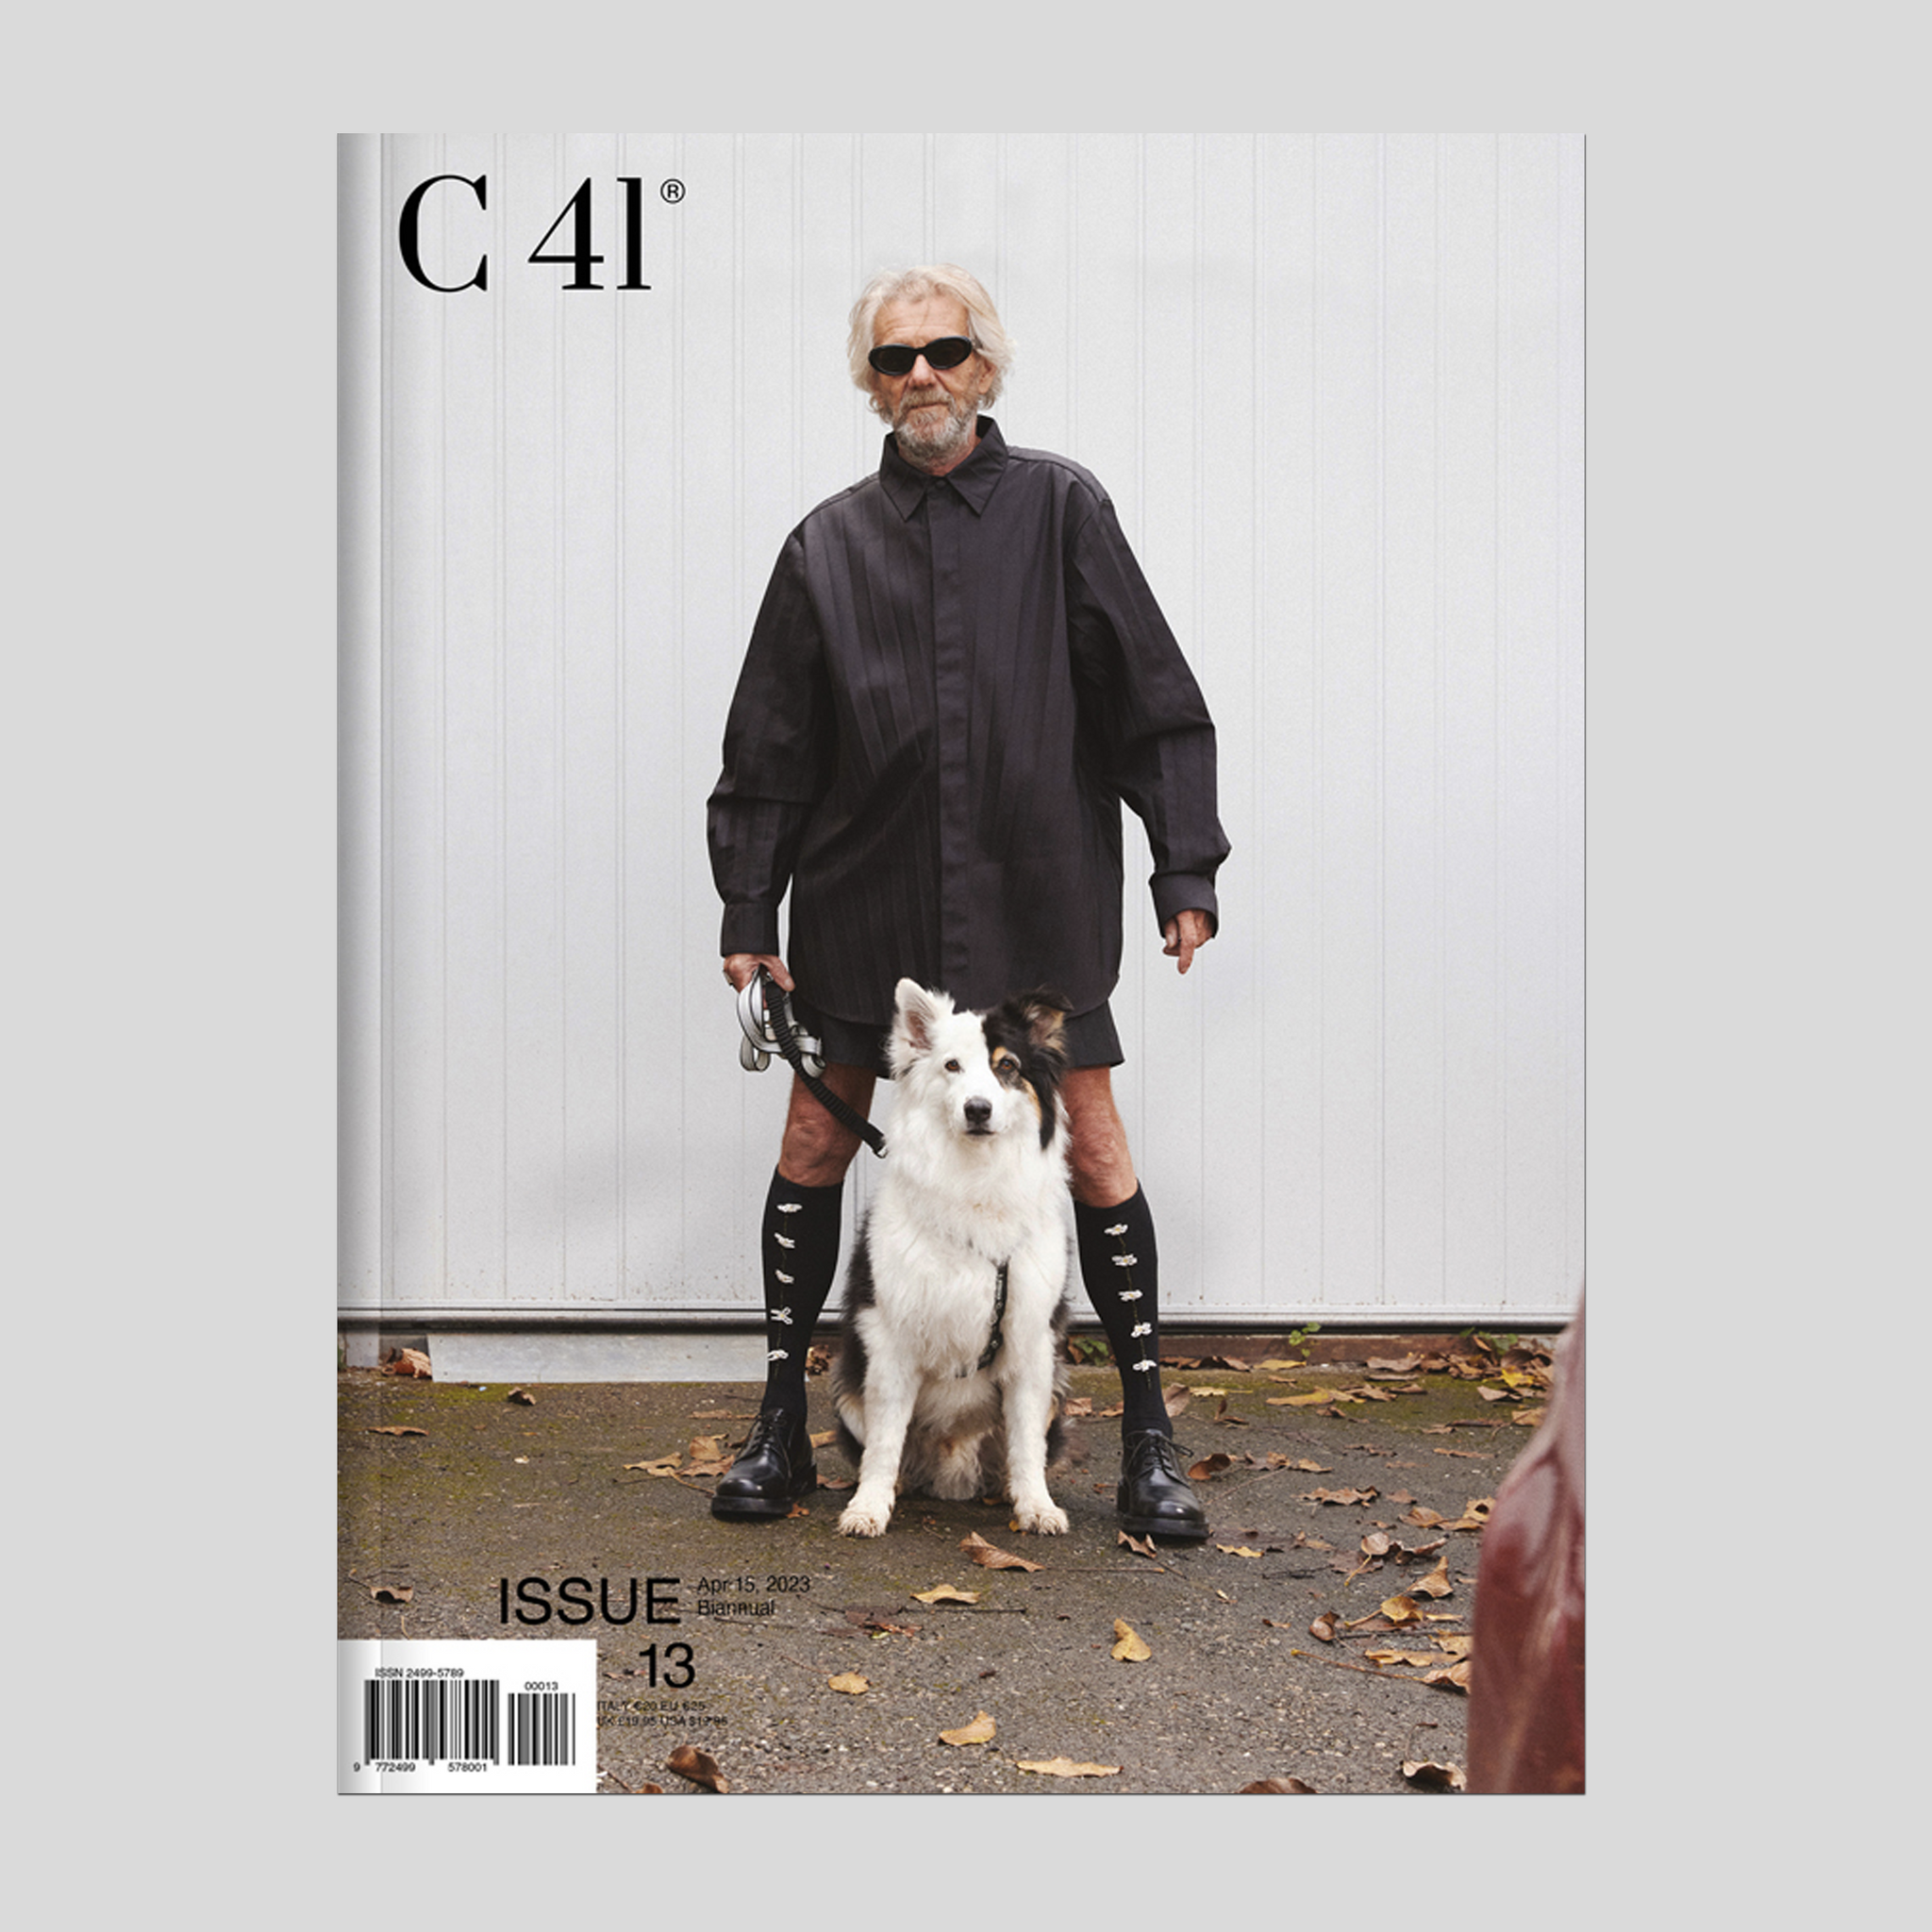 C41 magazine #13